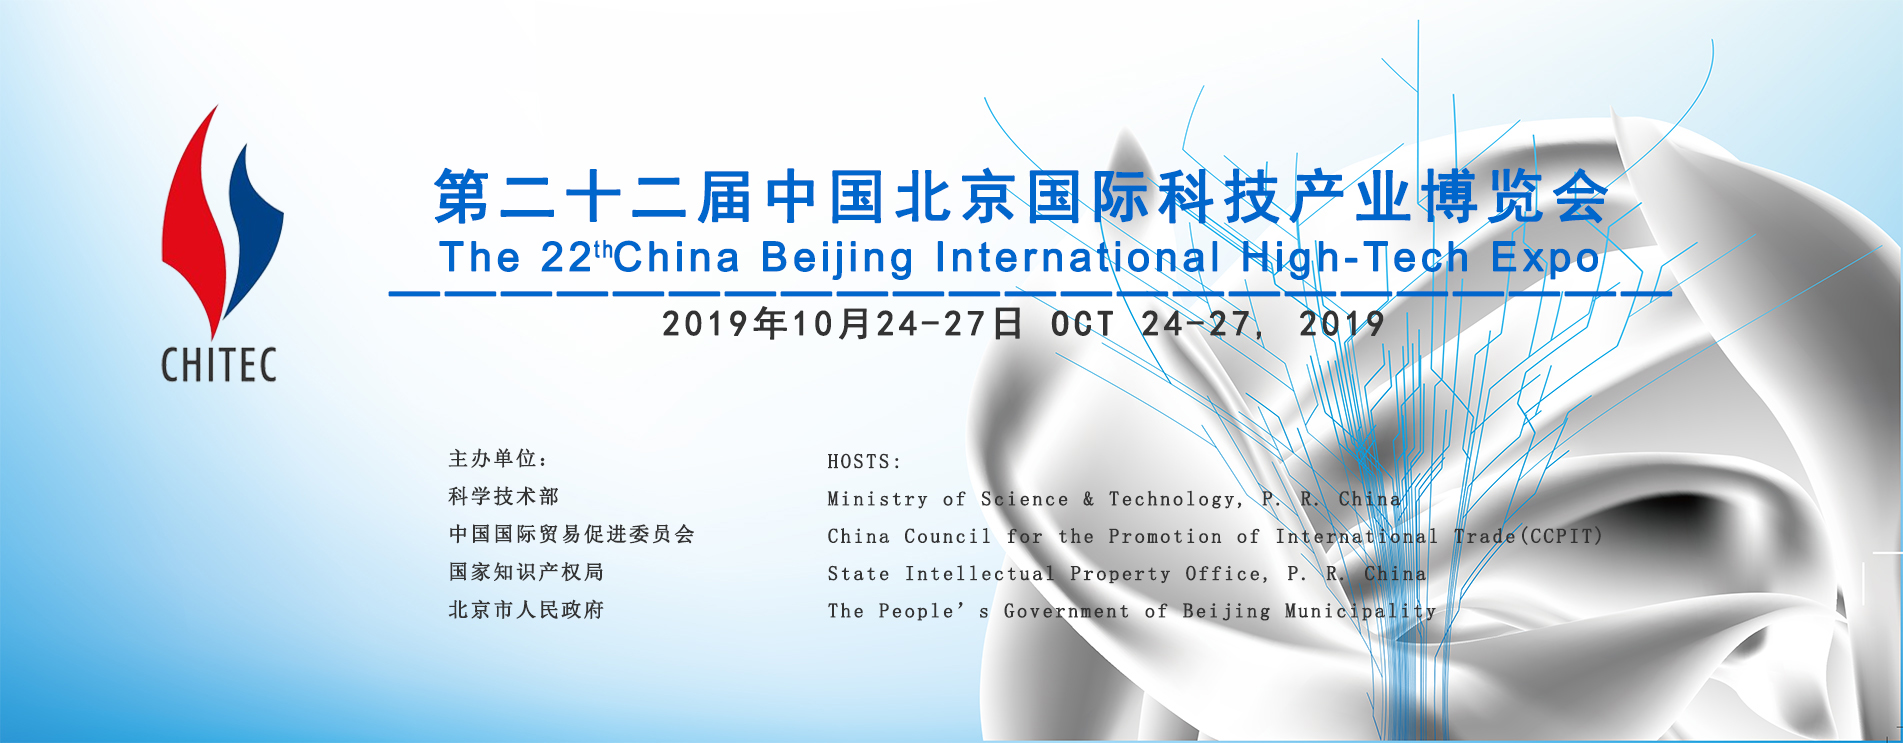 2019北京科博会-聚焦创业、产业、科技文化融合